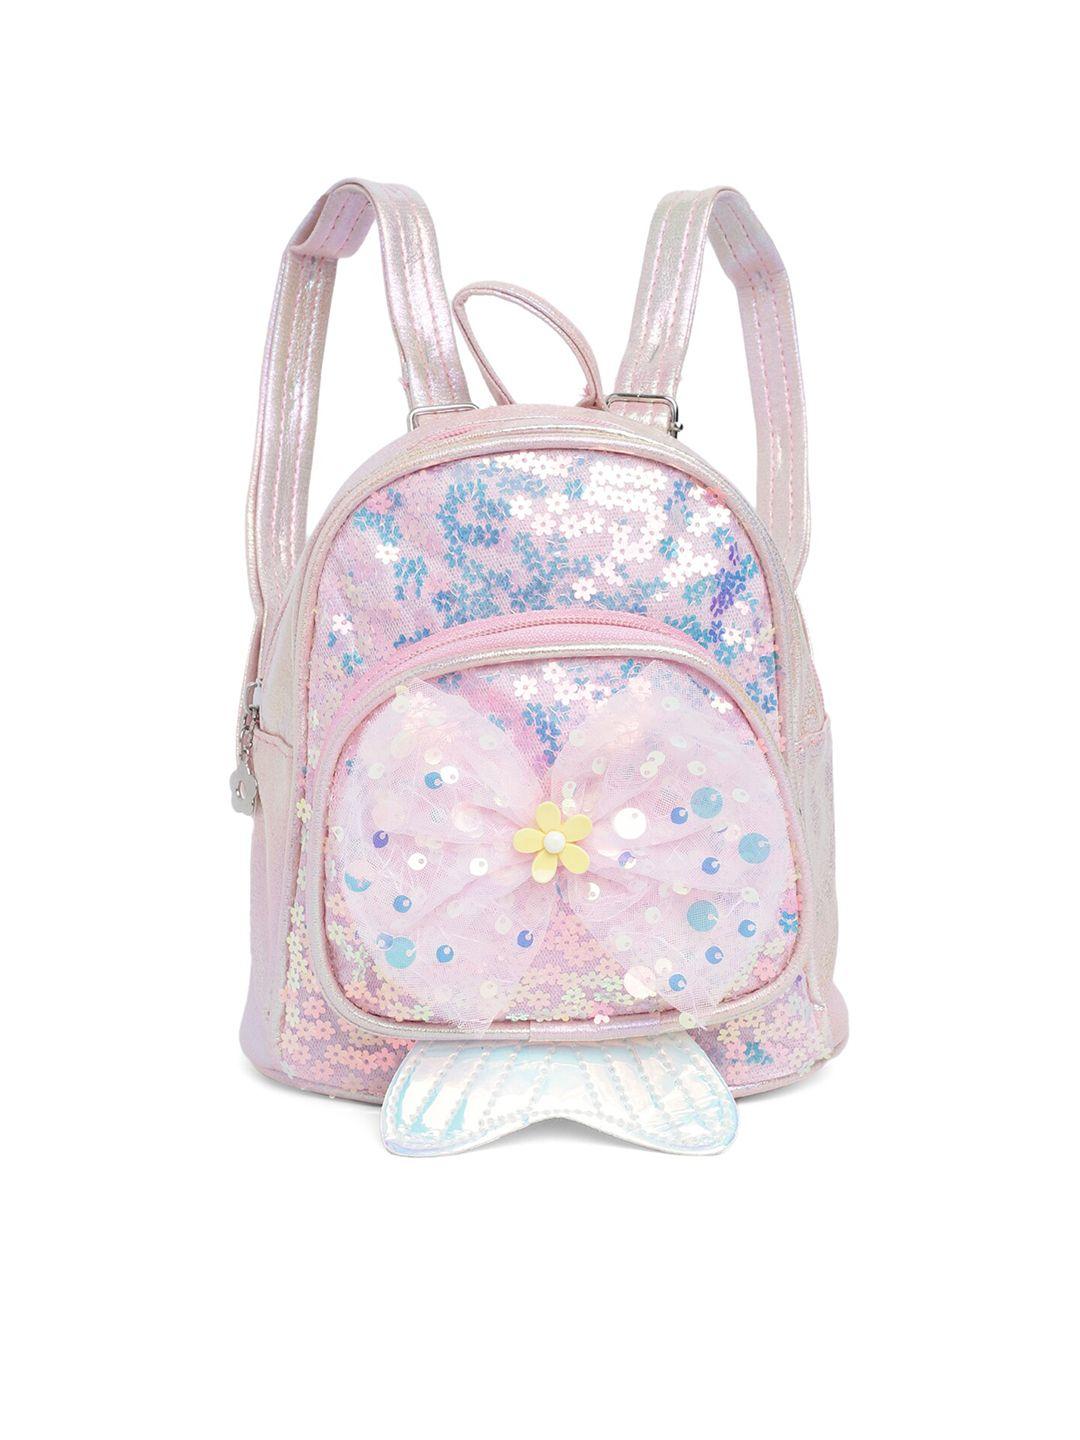 kids on board girls embellished backpack